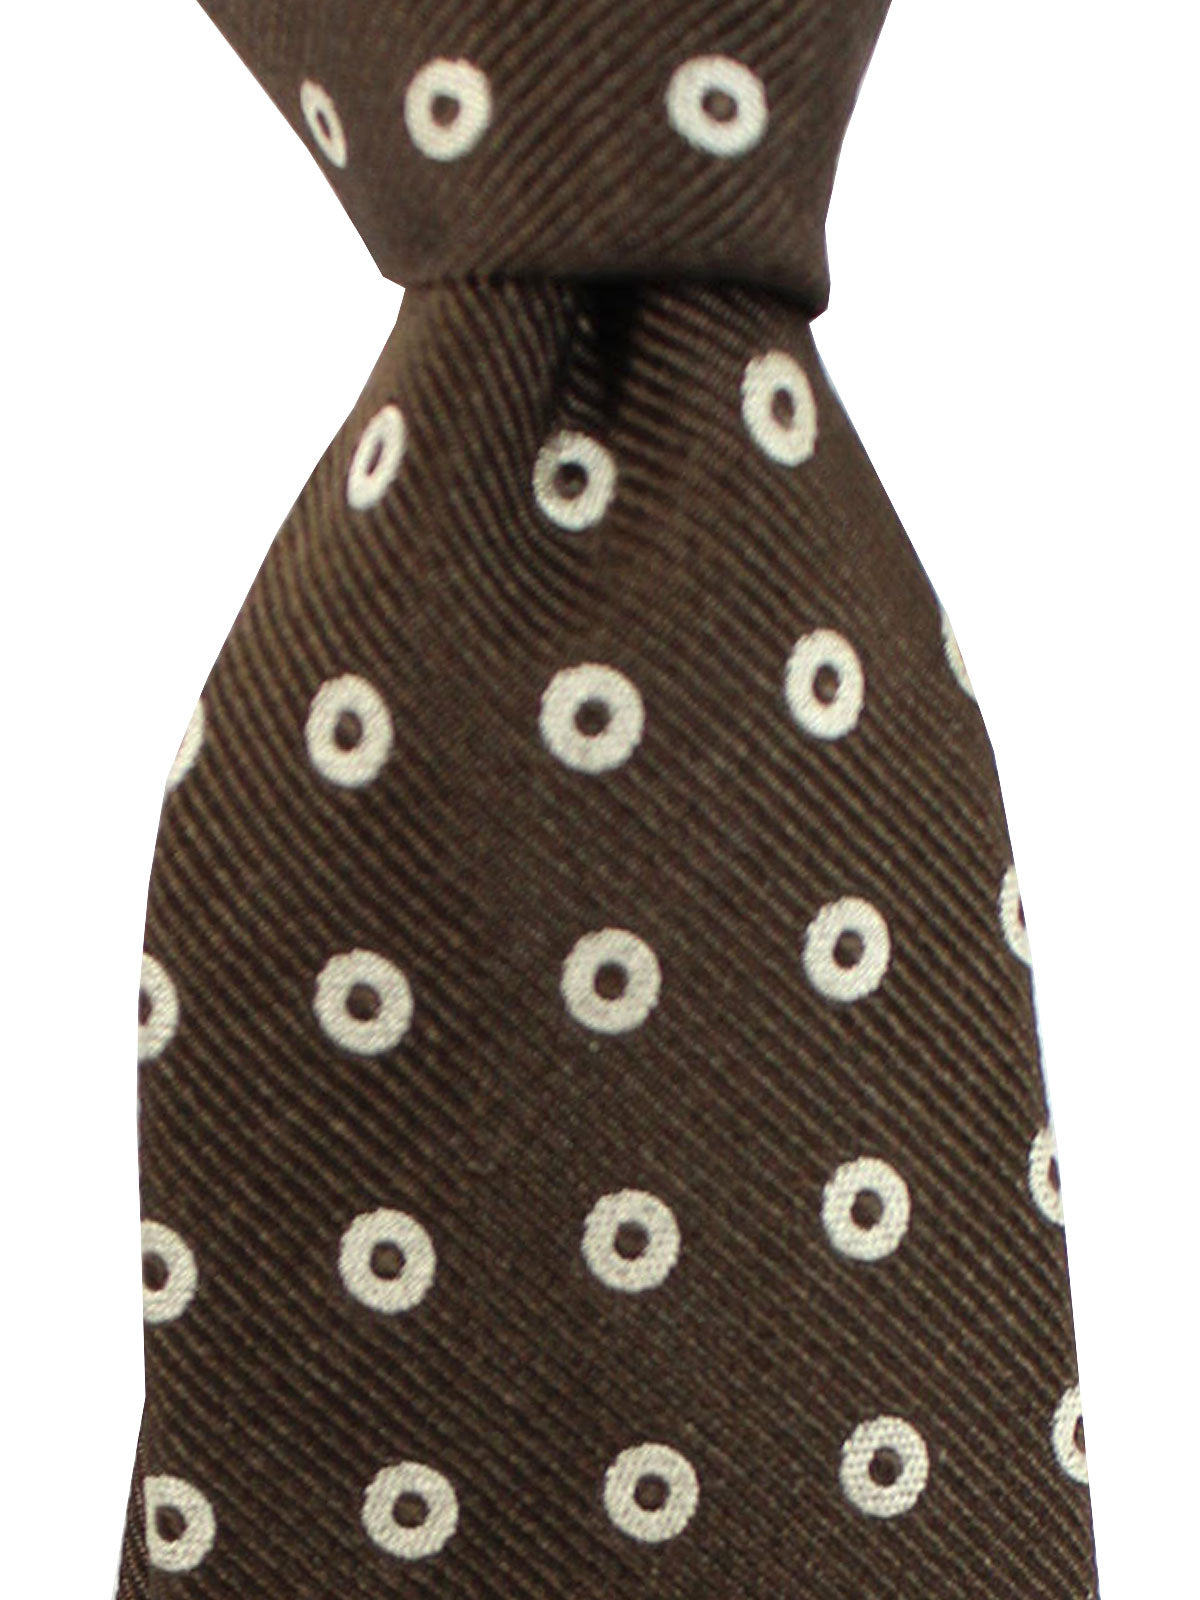 Brunello Cucinelli Tie Brown Circles - Wool Cashmere Silk